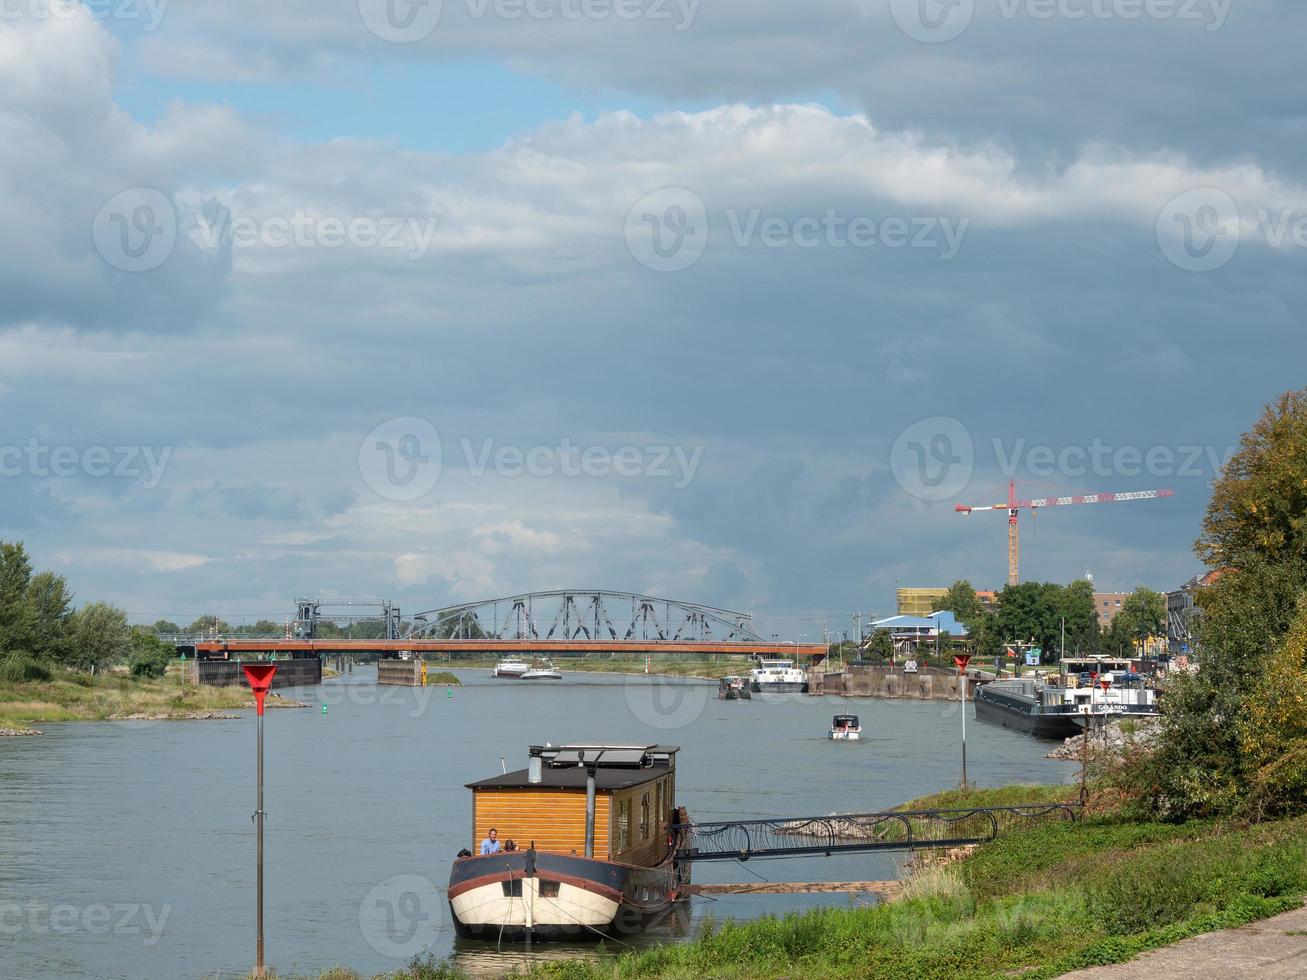 zutphen presso il fiume ijssel nei Paesi Bassi foto